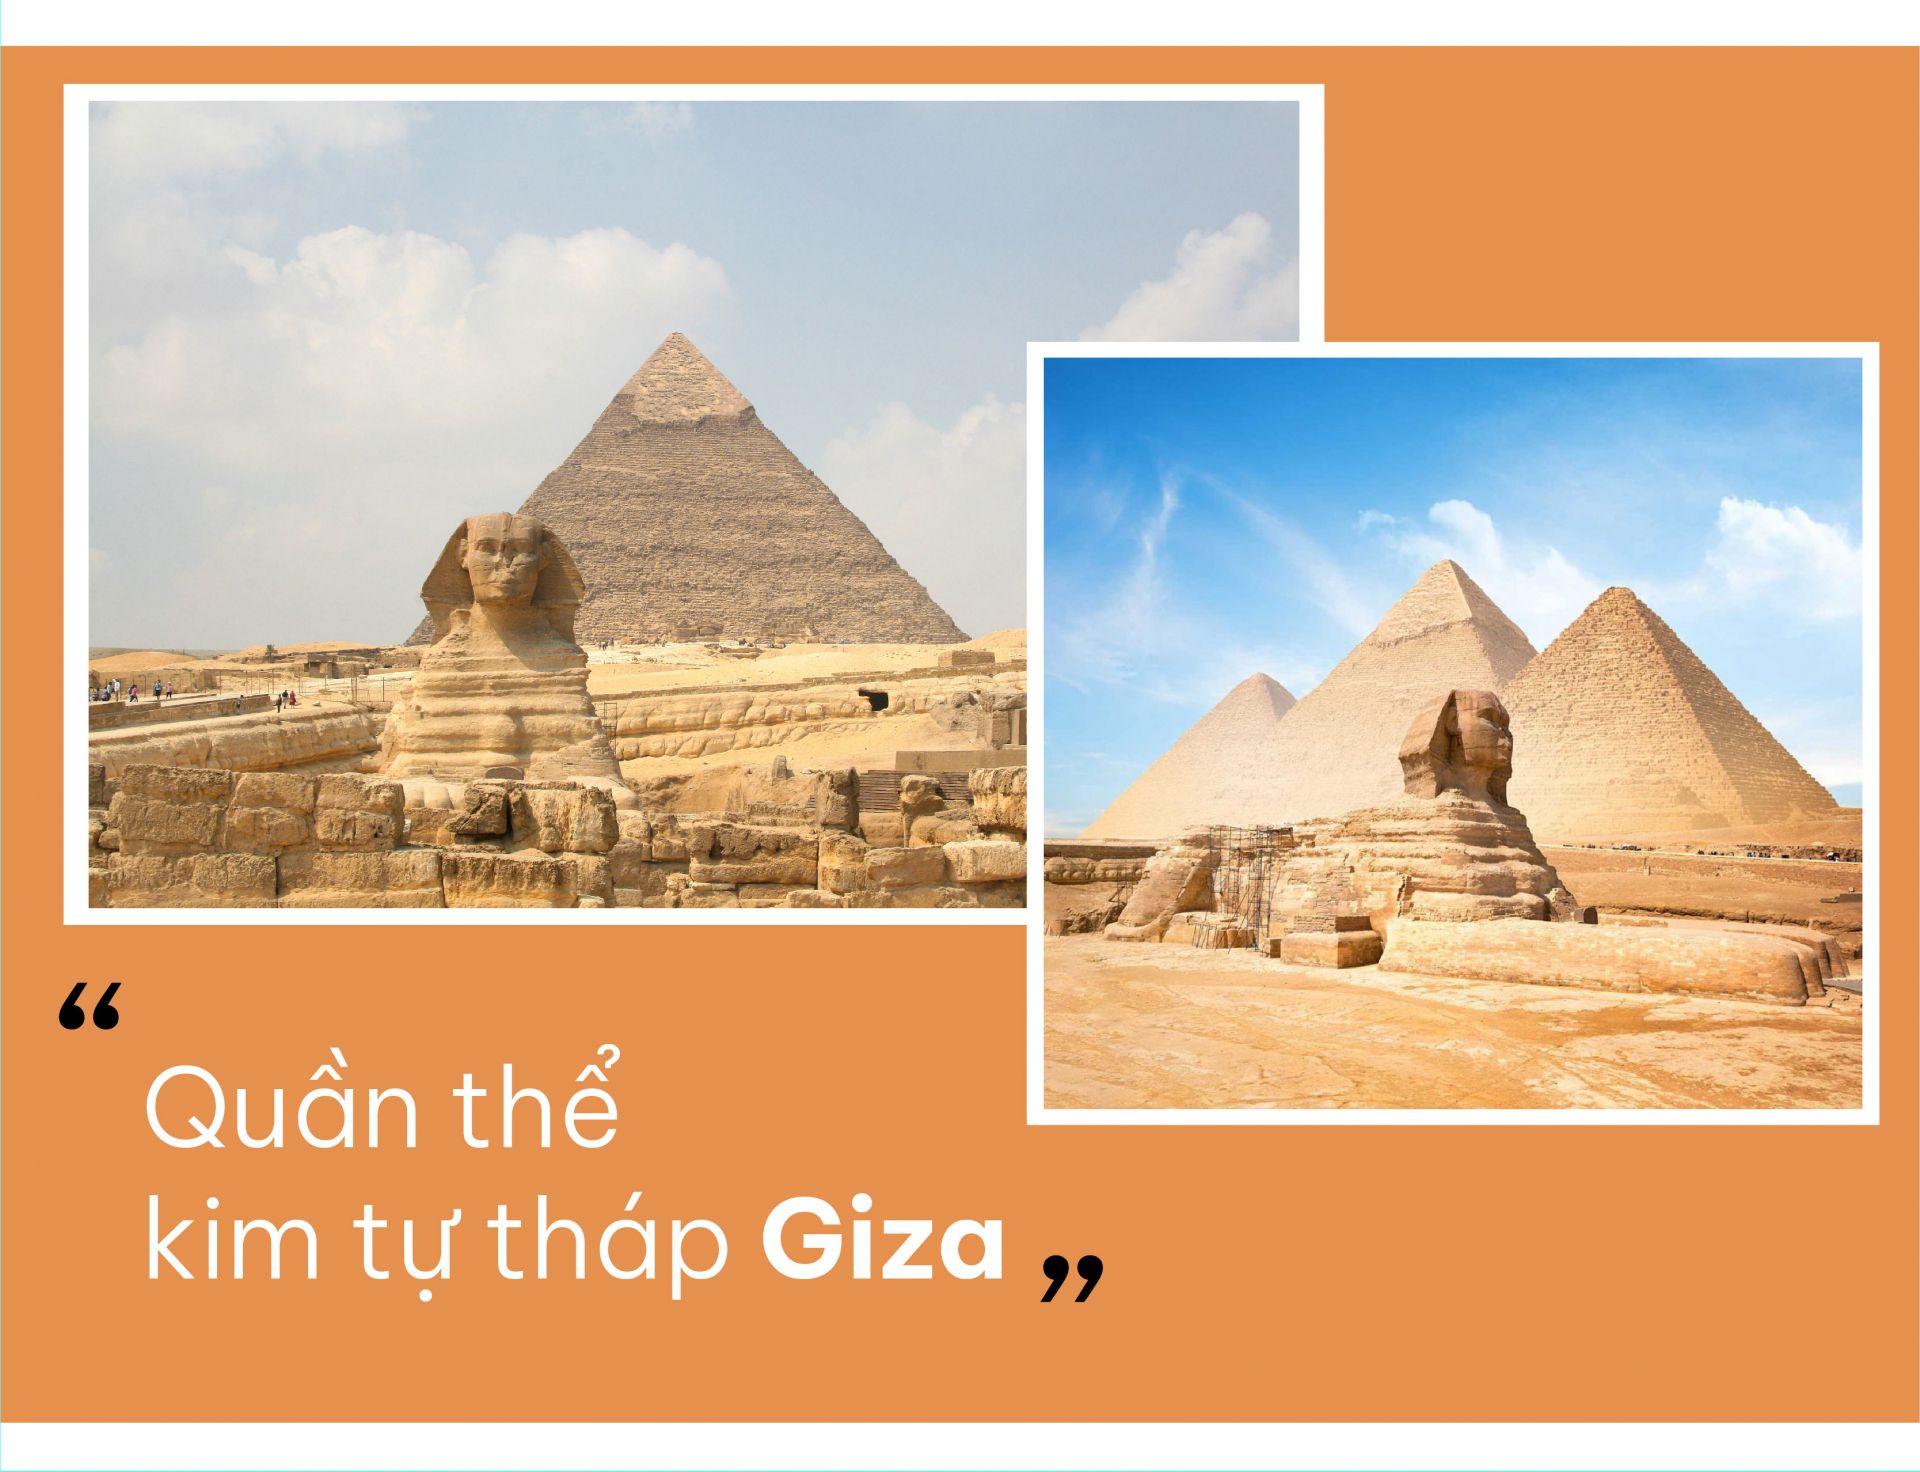 Khu lăng mộ của quần thể Giza bao gồm Kim tự tháp Khufu, kim tự tháp Khafre, kim tự tháp Menkaure cùng với một số công trình khác cùng với đó là có thêm tượng điêu khắc đại nhân sư cao hùng vĩ. Chưa hết mà quần thể này còn có những lăng mộ hoàng gia của giới quý tộc, tăng lữ hay các quan chức cao cấp. các lăng mộ thuộc thời Vương triều mới hay các ngồi đền thờ linh thiêng bày tỏ sự kính trọng tại nơi đây. Vì thế, du lịch châu Phi, đến với thủ đô Cairo chắc chắn sẽ không bỏ qua được công trình kim tự tháp này. Đây là công trình nhân tạo vĩ đại nhất với các khối đá được chạm khắc tinh xảo, xếp chồng lên nhau một cách hoàn hảo và vừa khít với độ cao lên đến 146,5 m. Hiện nay, Kim tự tháp Ai Cập Giza được xem như một công trình kiến trúc cổ đại cũng như là một địa điểm du lịch lý tưởng cho những ai yêu thích những điều cổ xưa. Qua đó, mà nó xem là một tuyệt tác của người xưa để lại, là dấu tích của lịch sử, của thời gian. Mặc dù bị bào mòn bởi thời gian nhưng nó chưa bao giờ khiến du khách cũng như giới nghiên cứu khảo cổ ngừng thích thú khám phá và tìm hiểu.